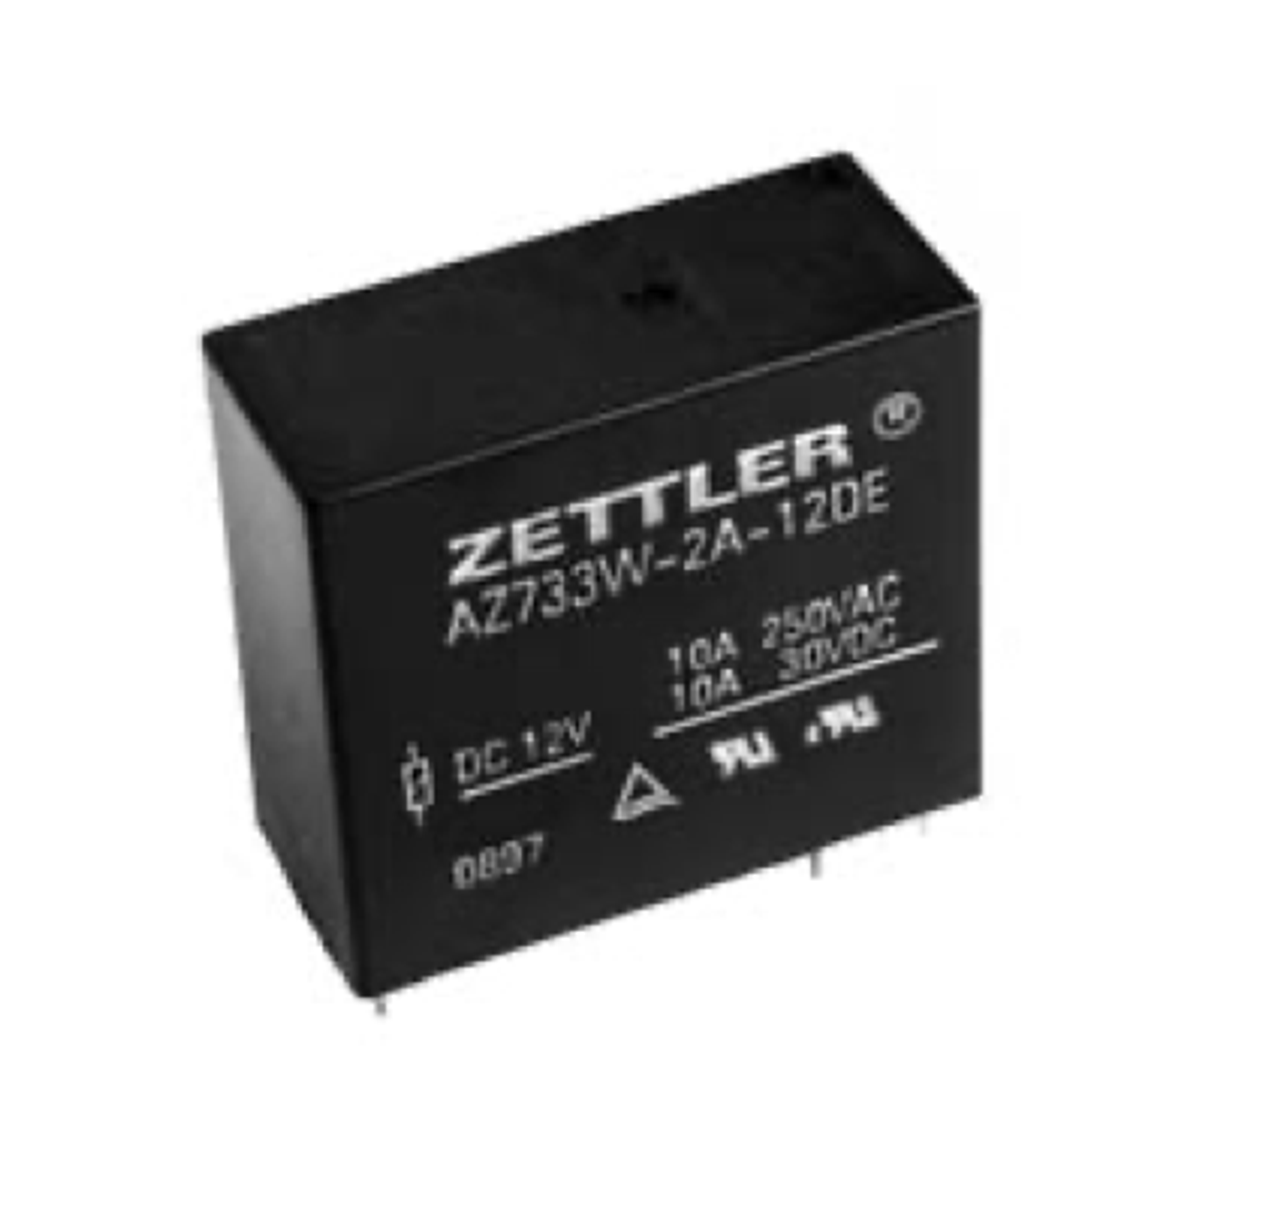 American Zettler AZ733W-2A-48DE Power Relay